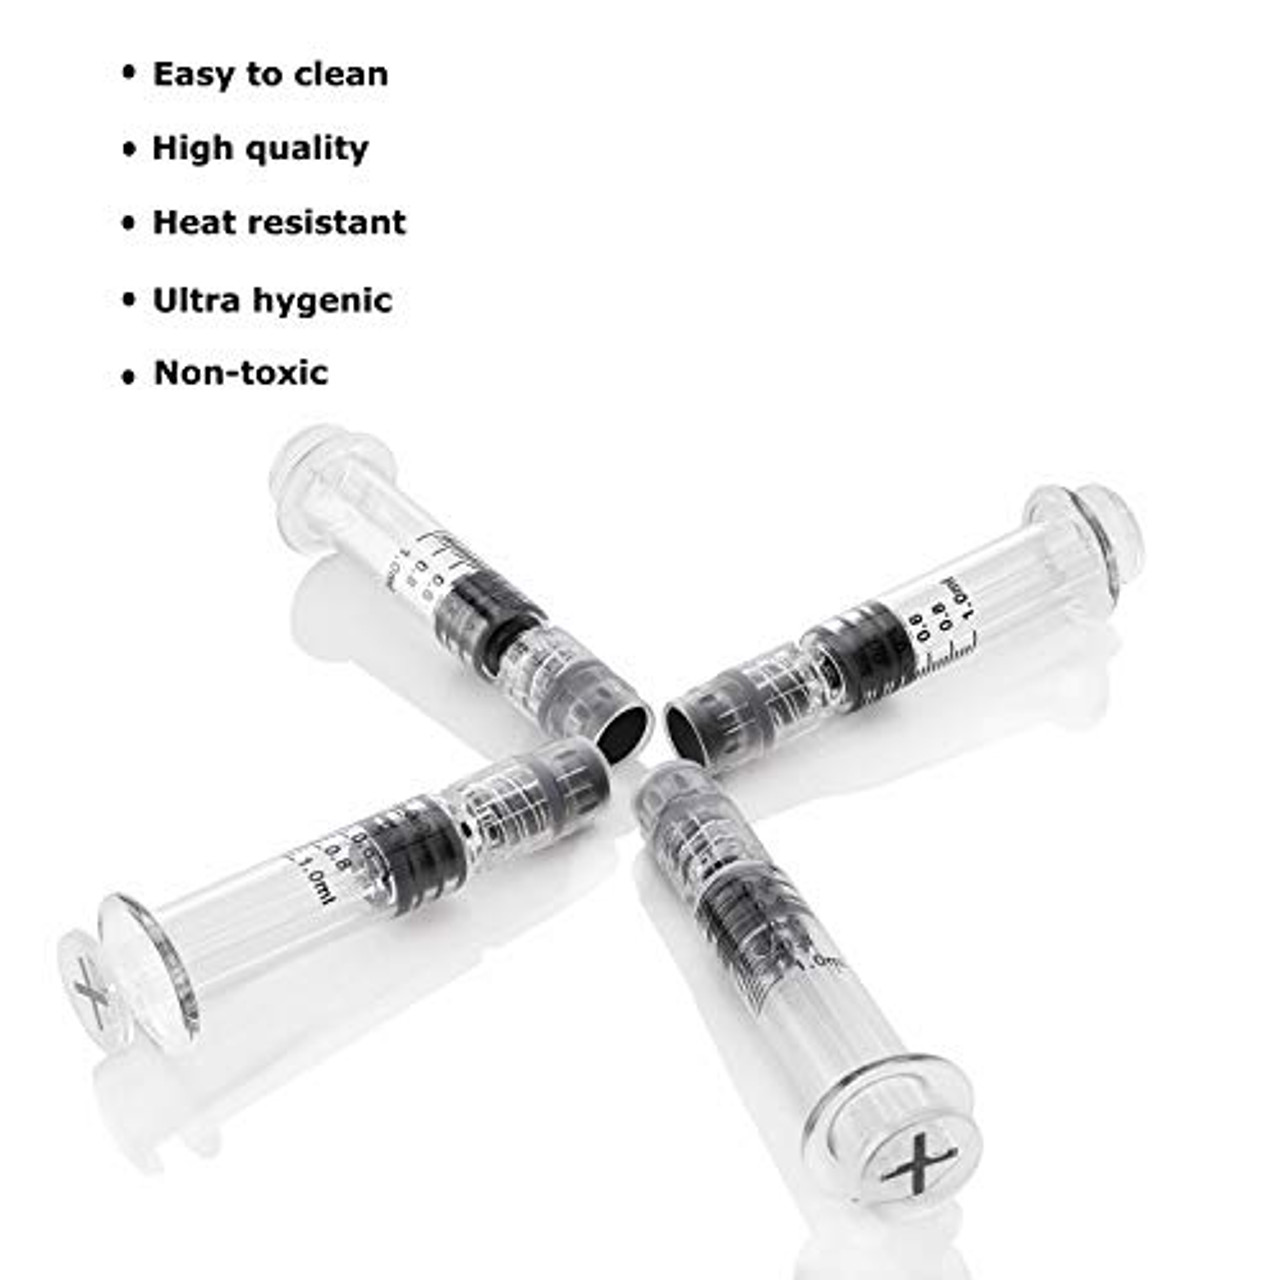 100 Pack Borosilicate Glass Luer Lock Syringe - 1ml Capacity